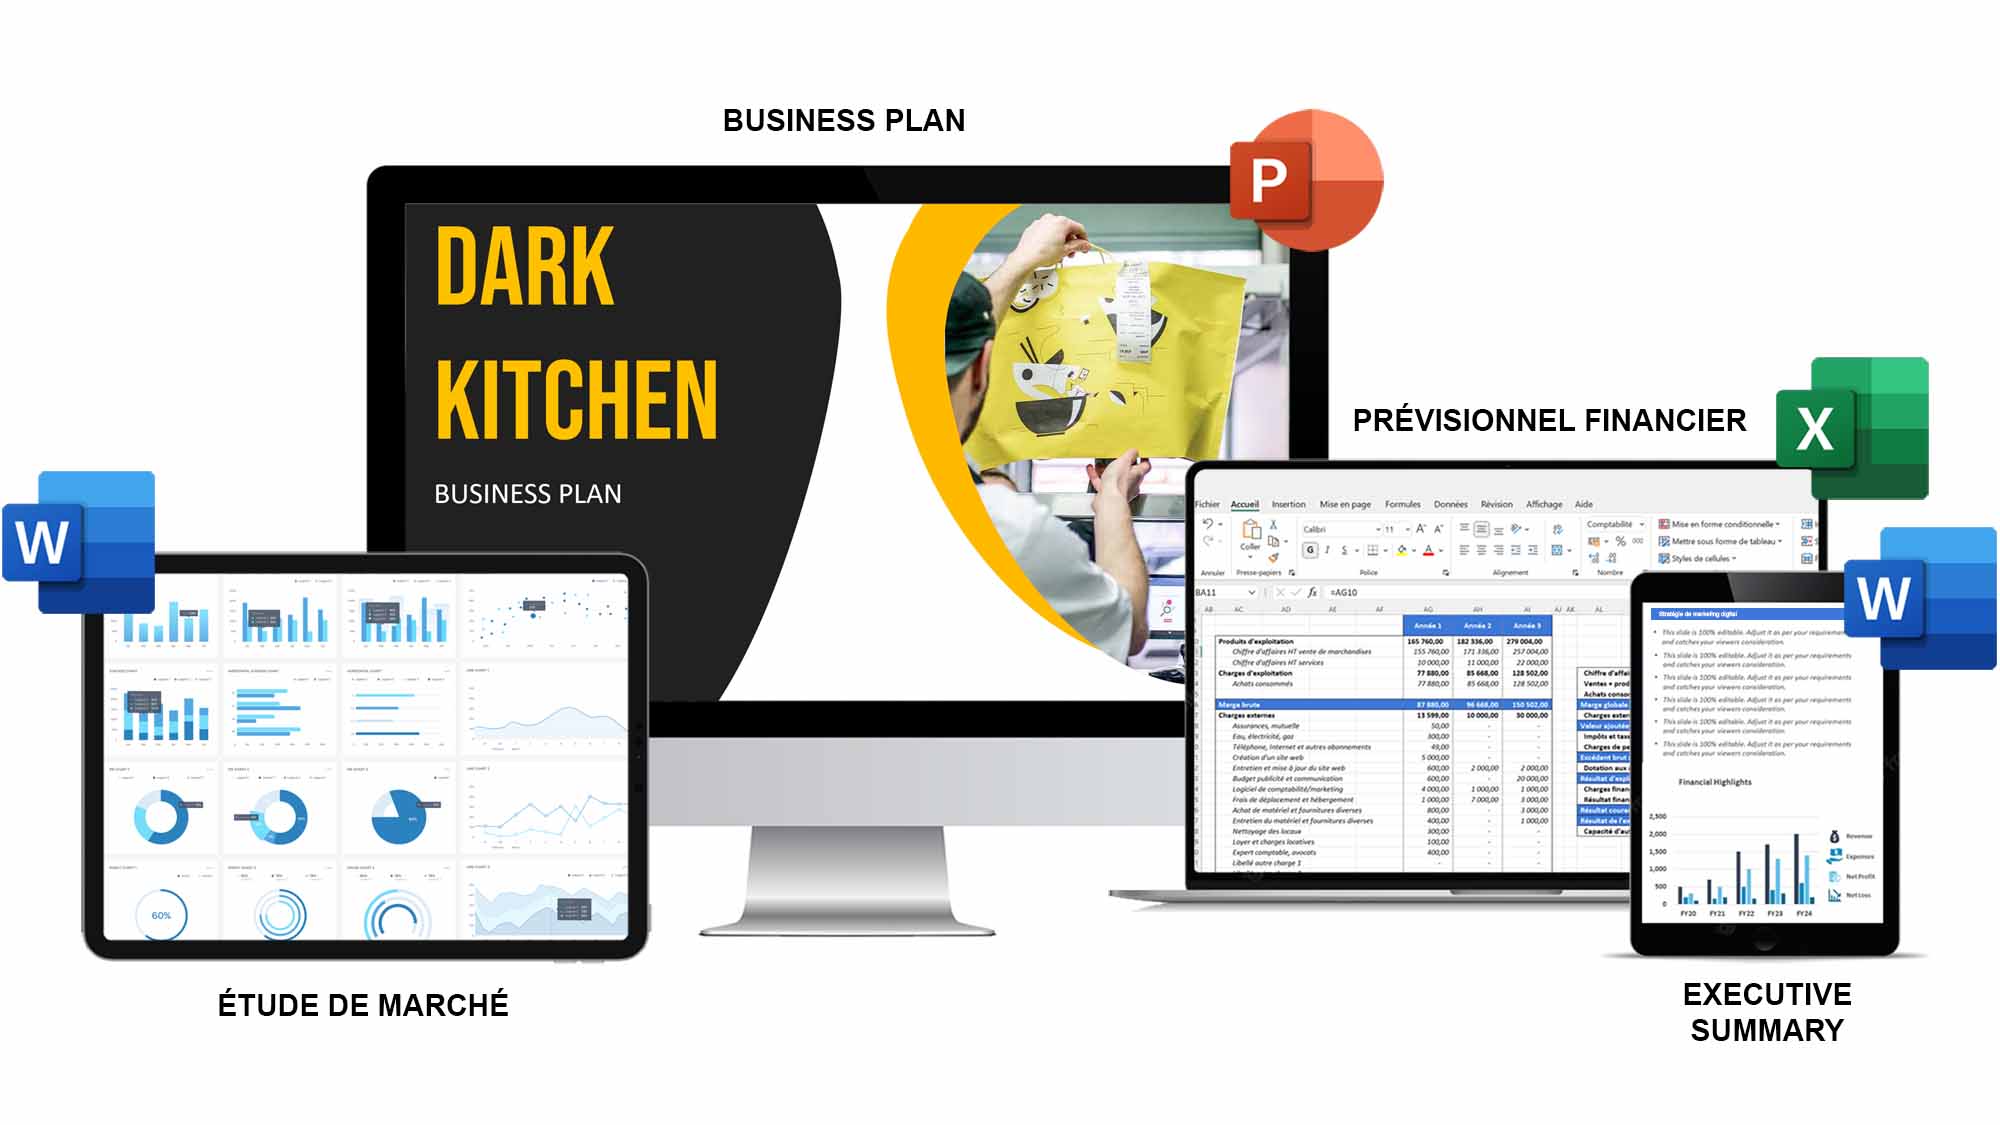 dark kitchen business plan pdf